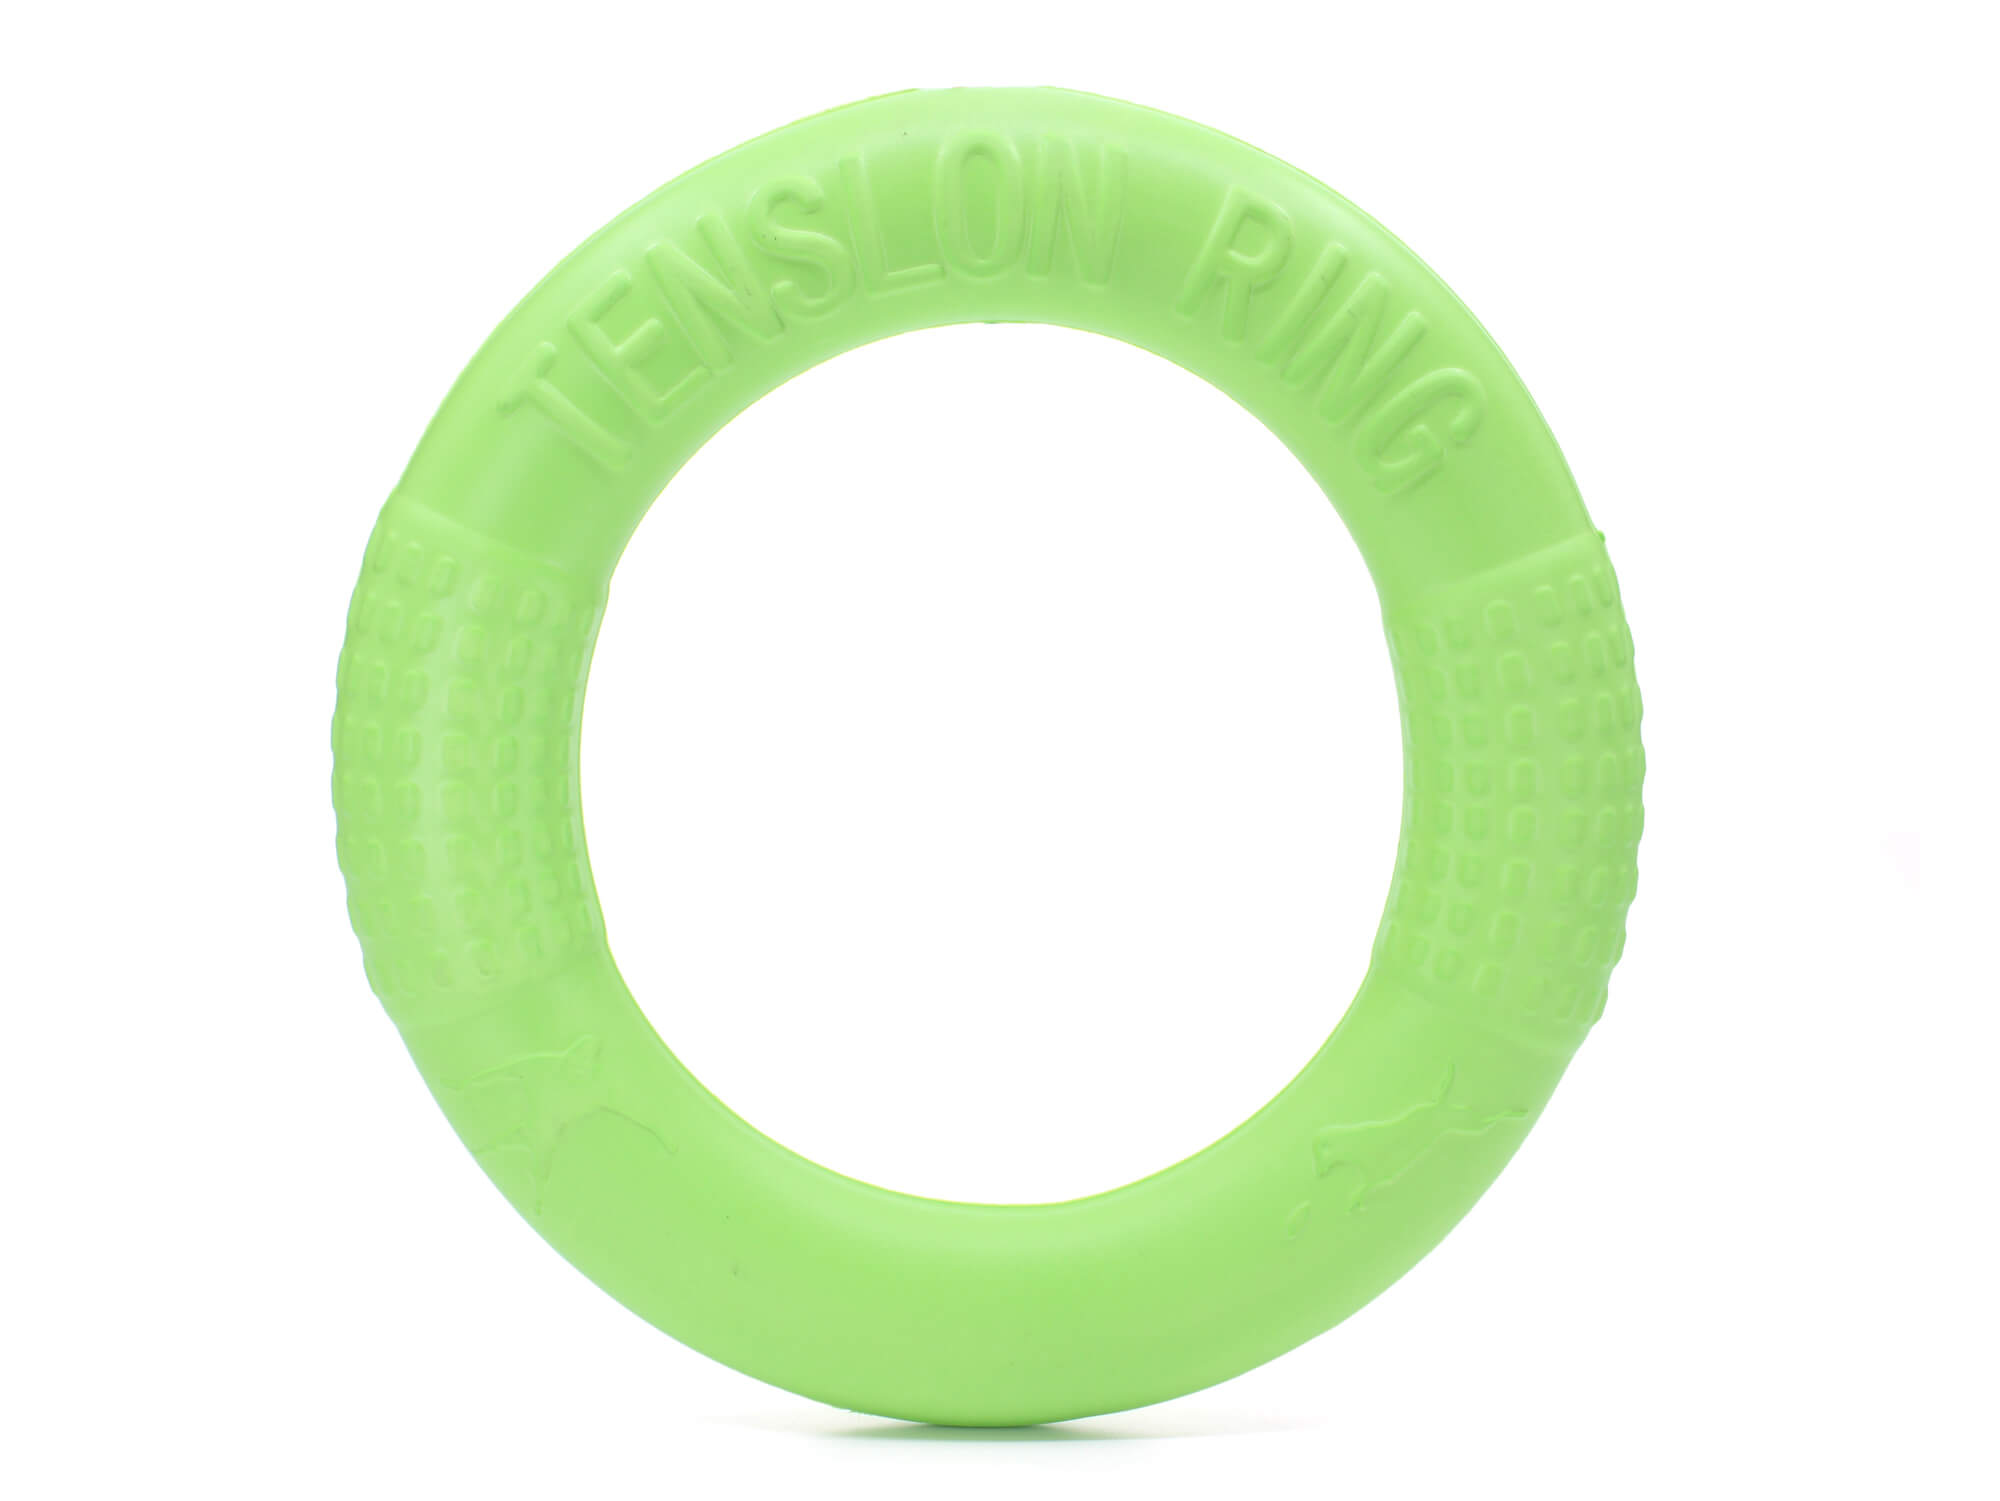 Vsepropejska Kif gumové přetahovalo pro psa | 17 cm Barva: Zelená, Průměr: 17 cm